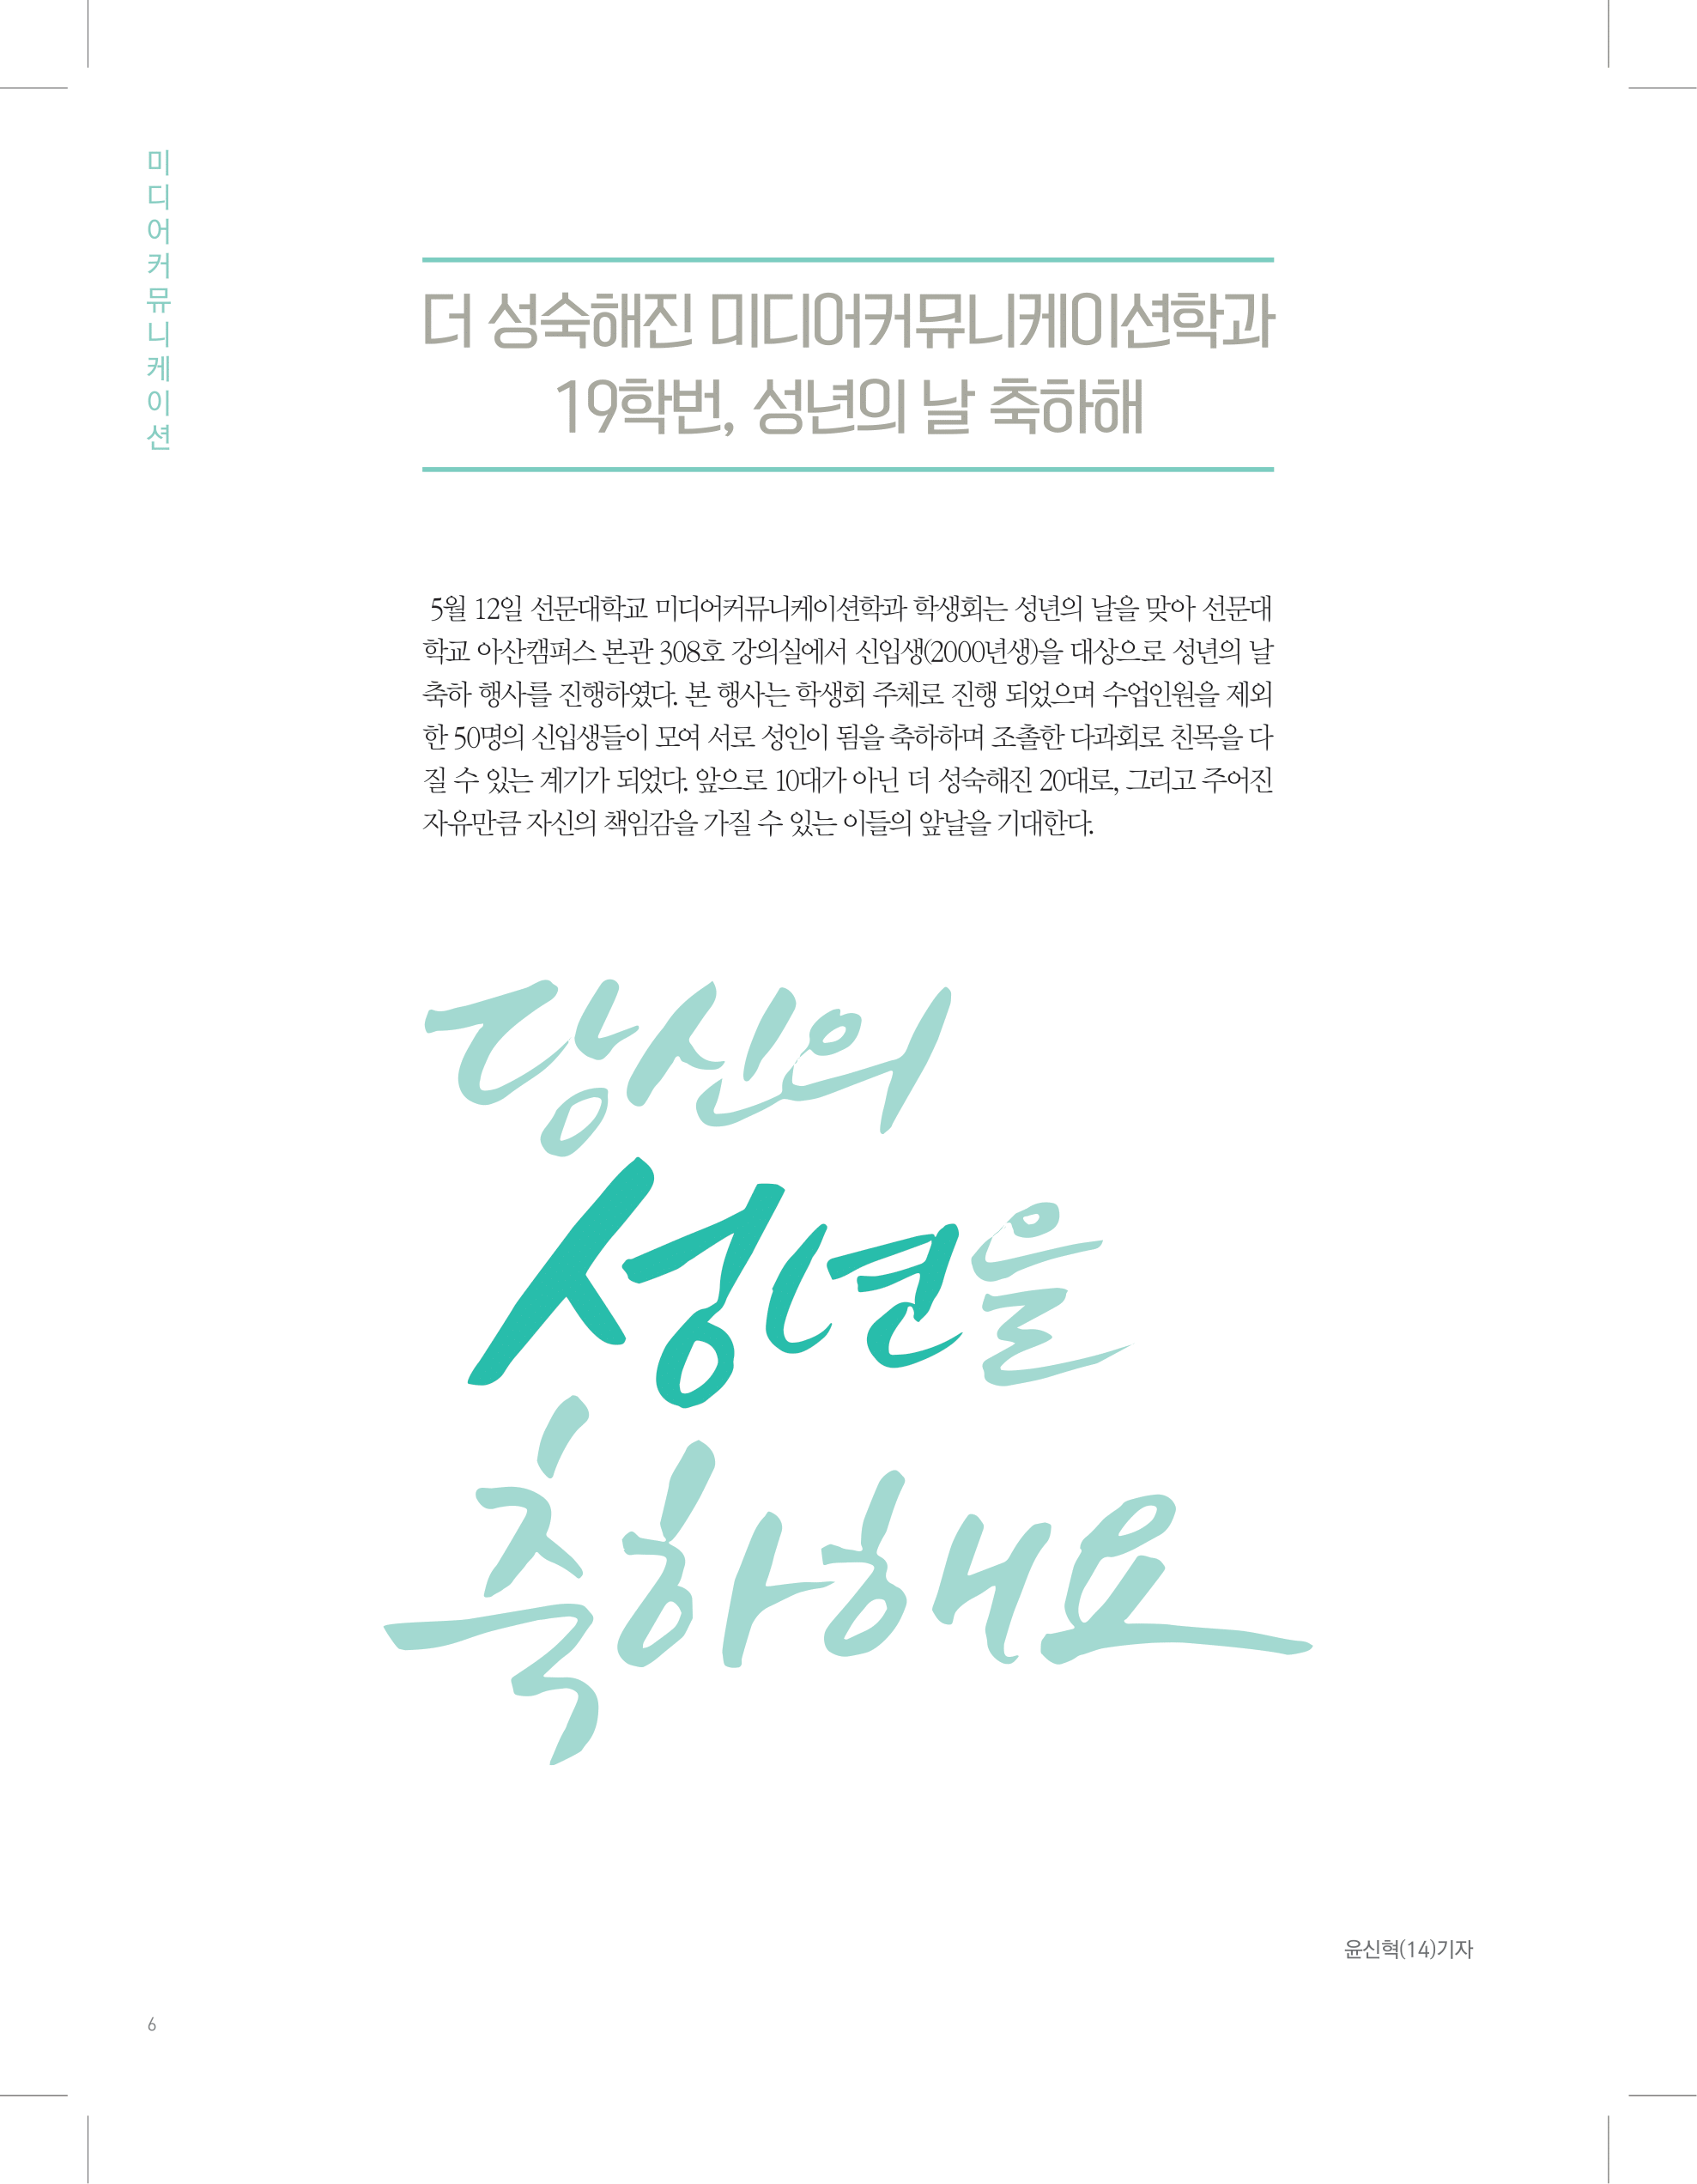 뜻새김 신문 73호 6